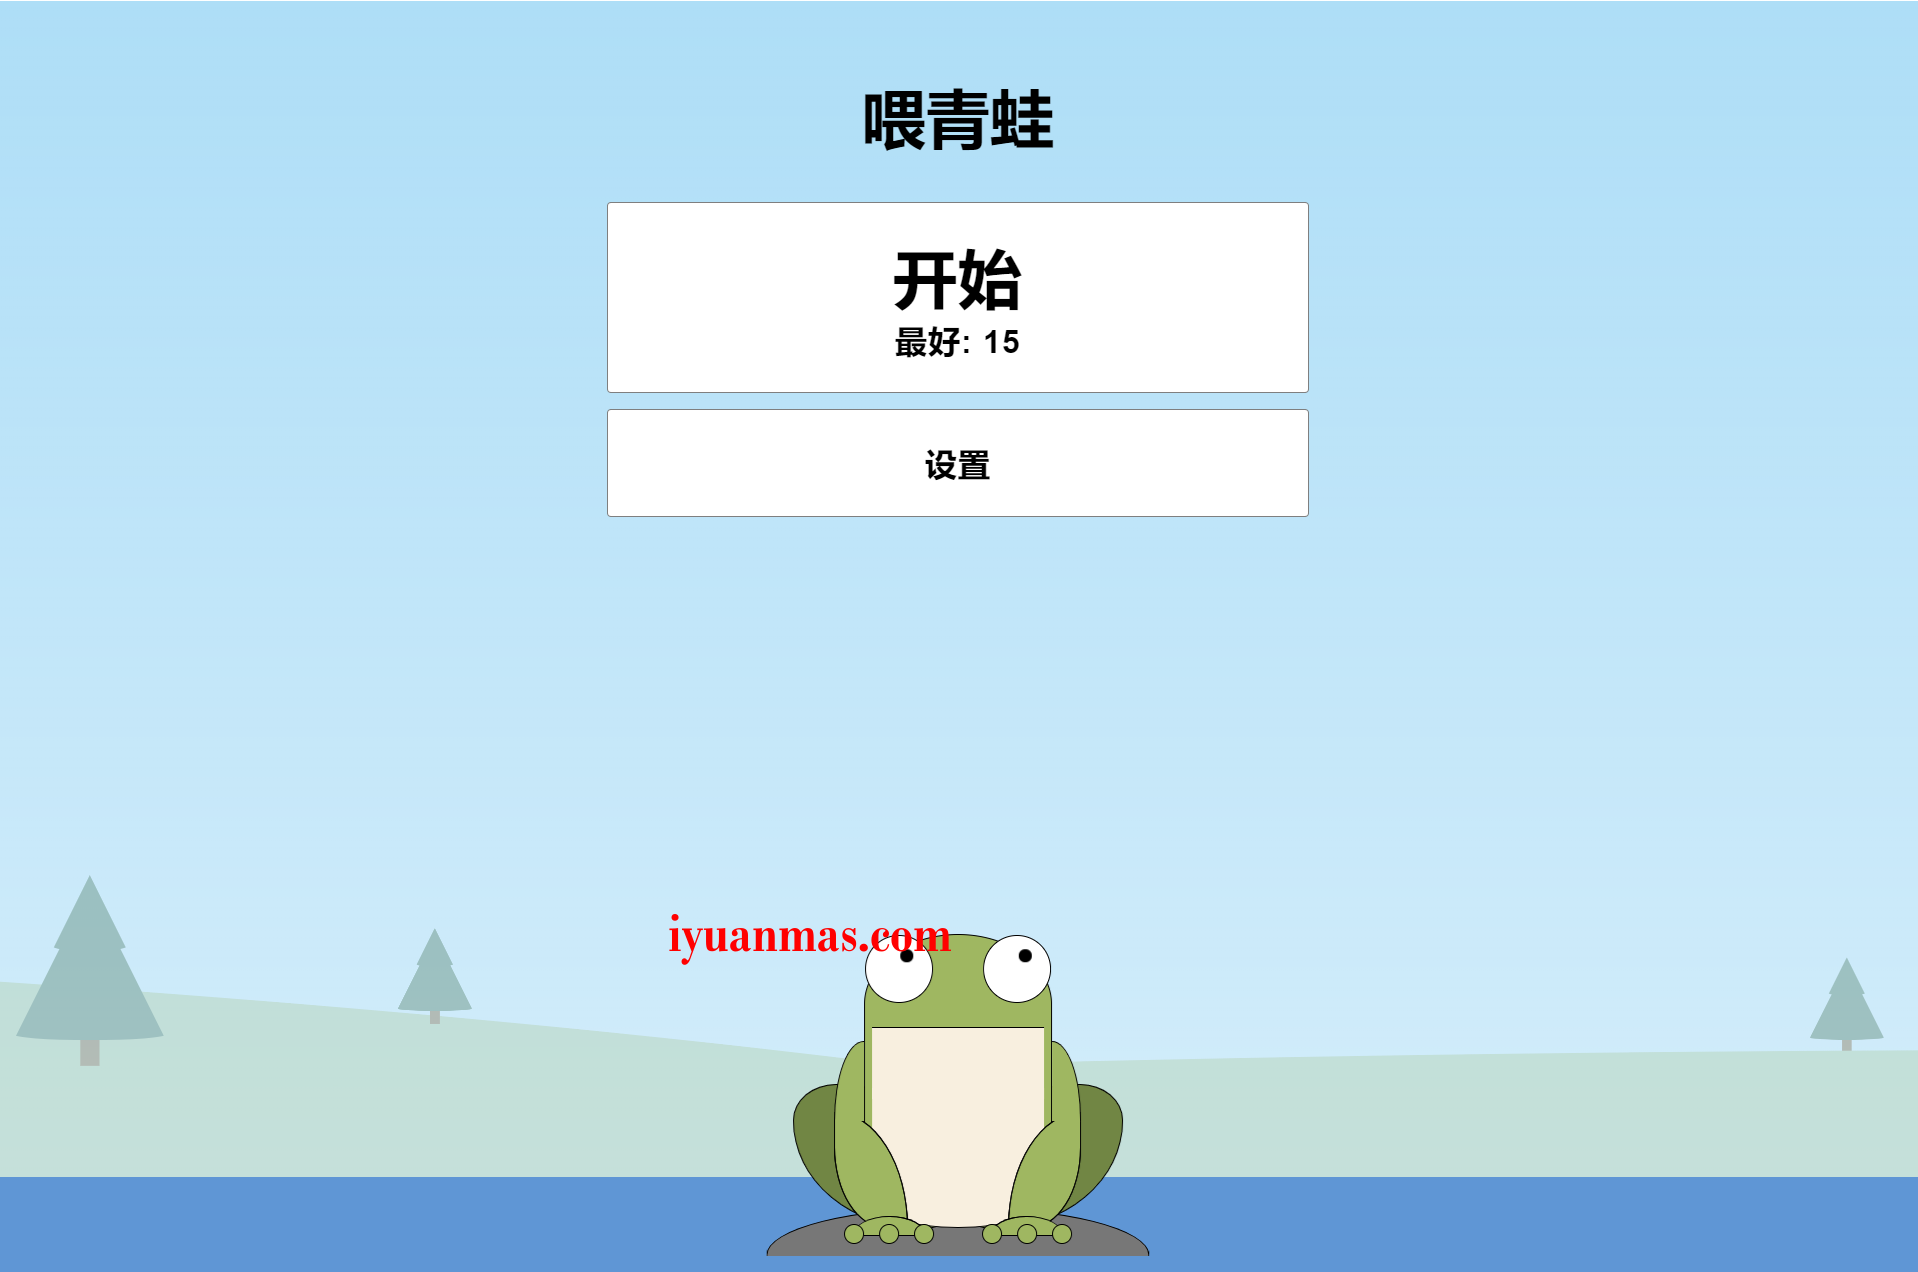 HTML5开发的青蛙吃蚊子小游戏程序代码分享 HTML源码模板 第3张